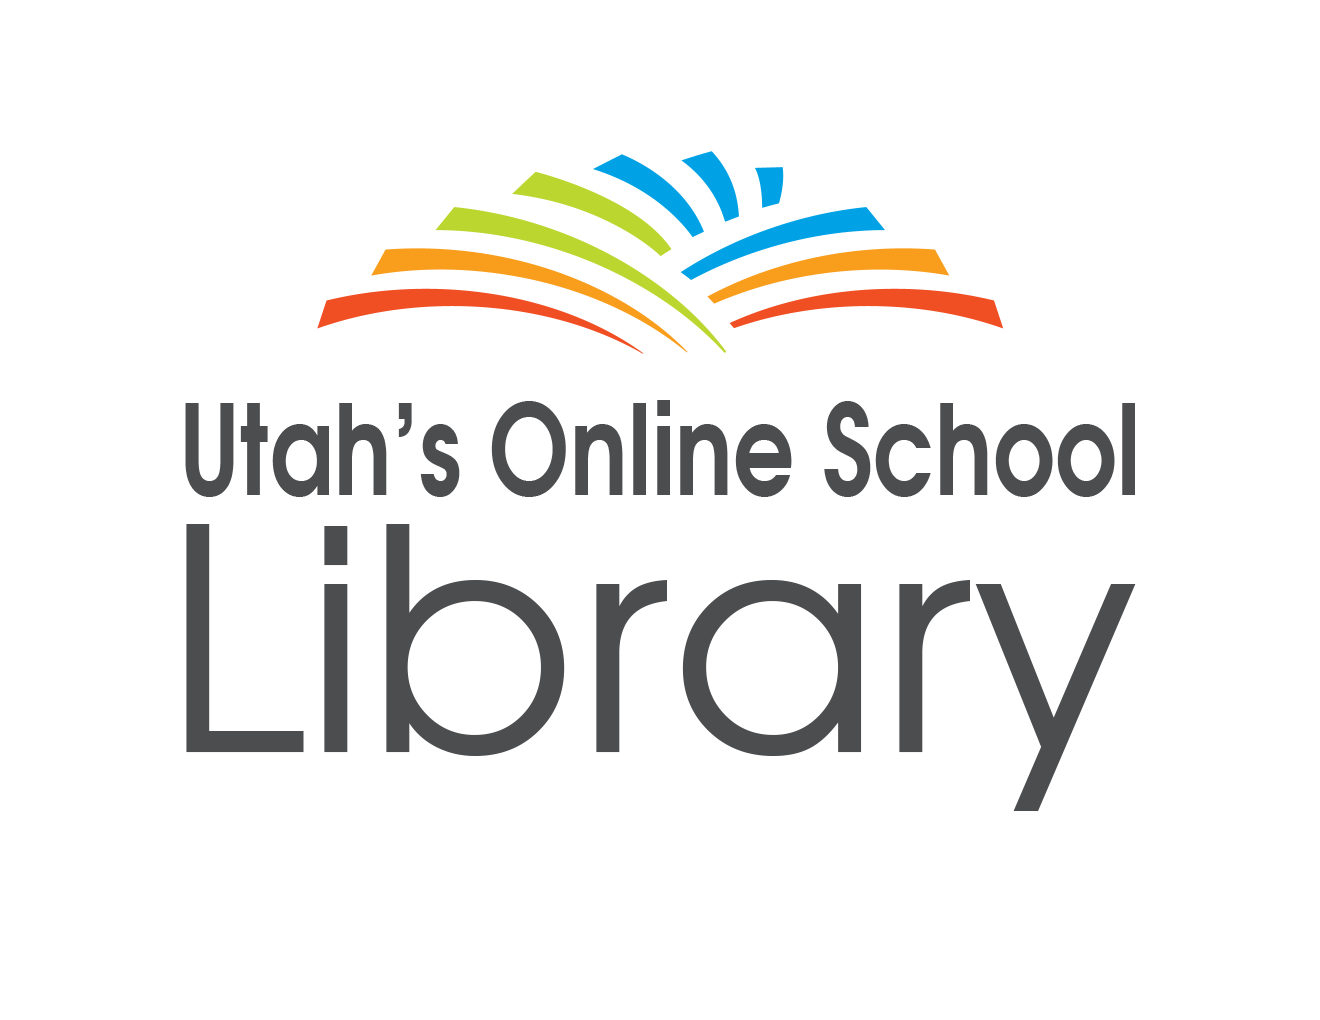 Utah's Online School Library Logo